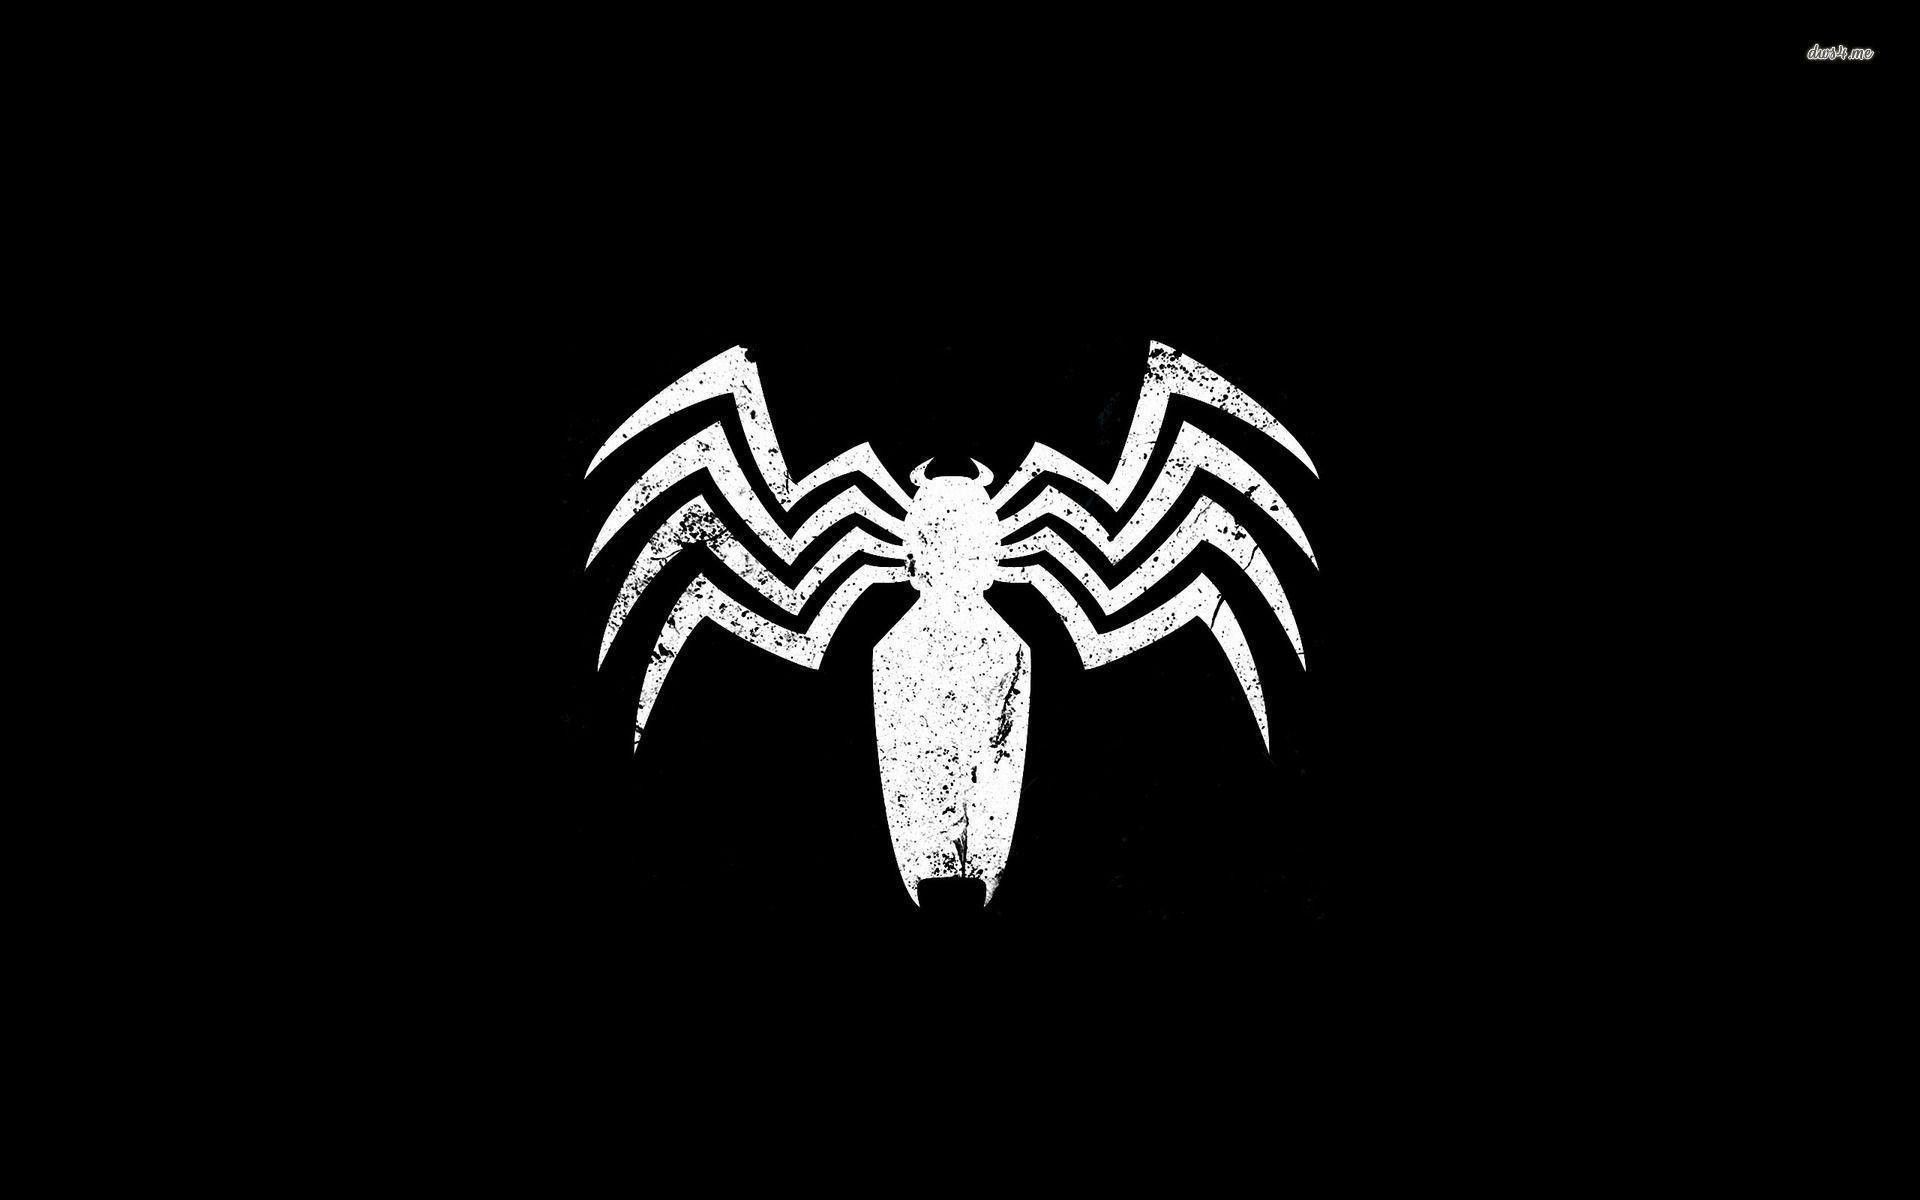 Fondos de Venom (más de 67 imágenes de fondo)